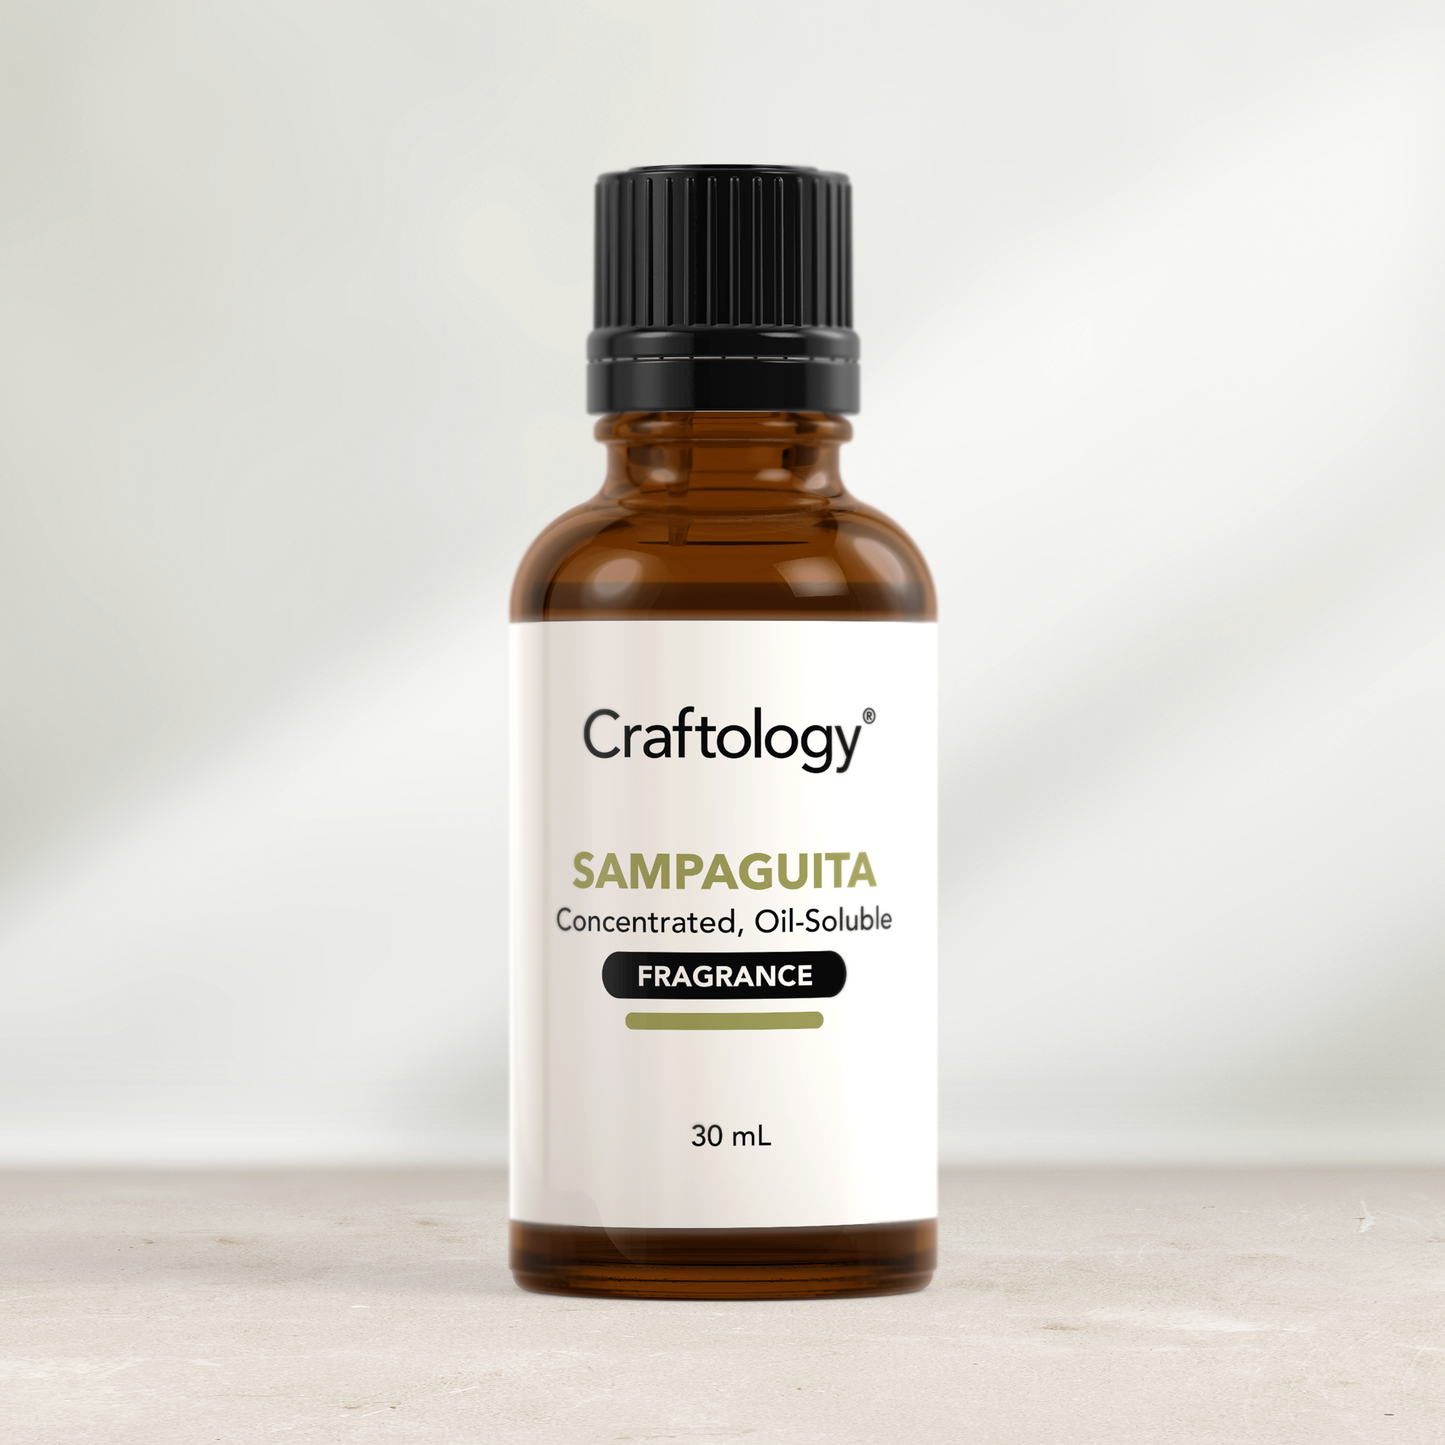 Sampaguita Fragrance Oil